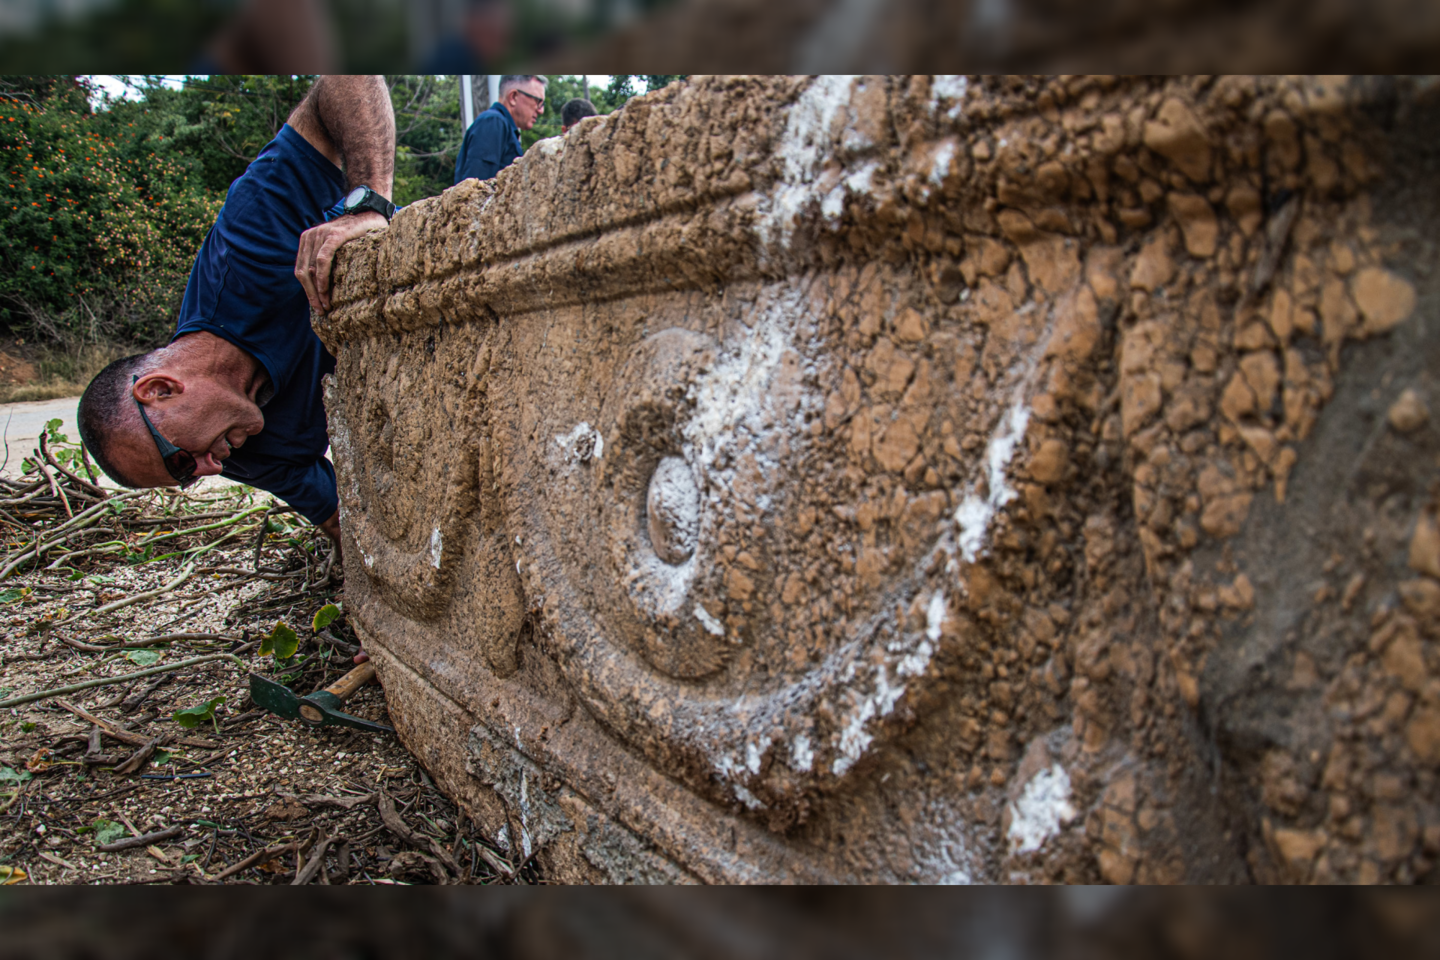  Zoologijos parke netoli Tel Avivo miesto (Izraelis) atrasti du senoviniai akmeniniai karstai, kuriuose kadaise galėjo būti vyro ir žmonos palaikai.<br> Yola Schwartz / IAA nuotr.